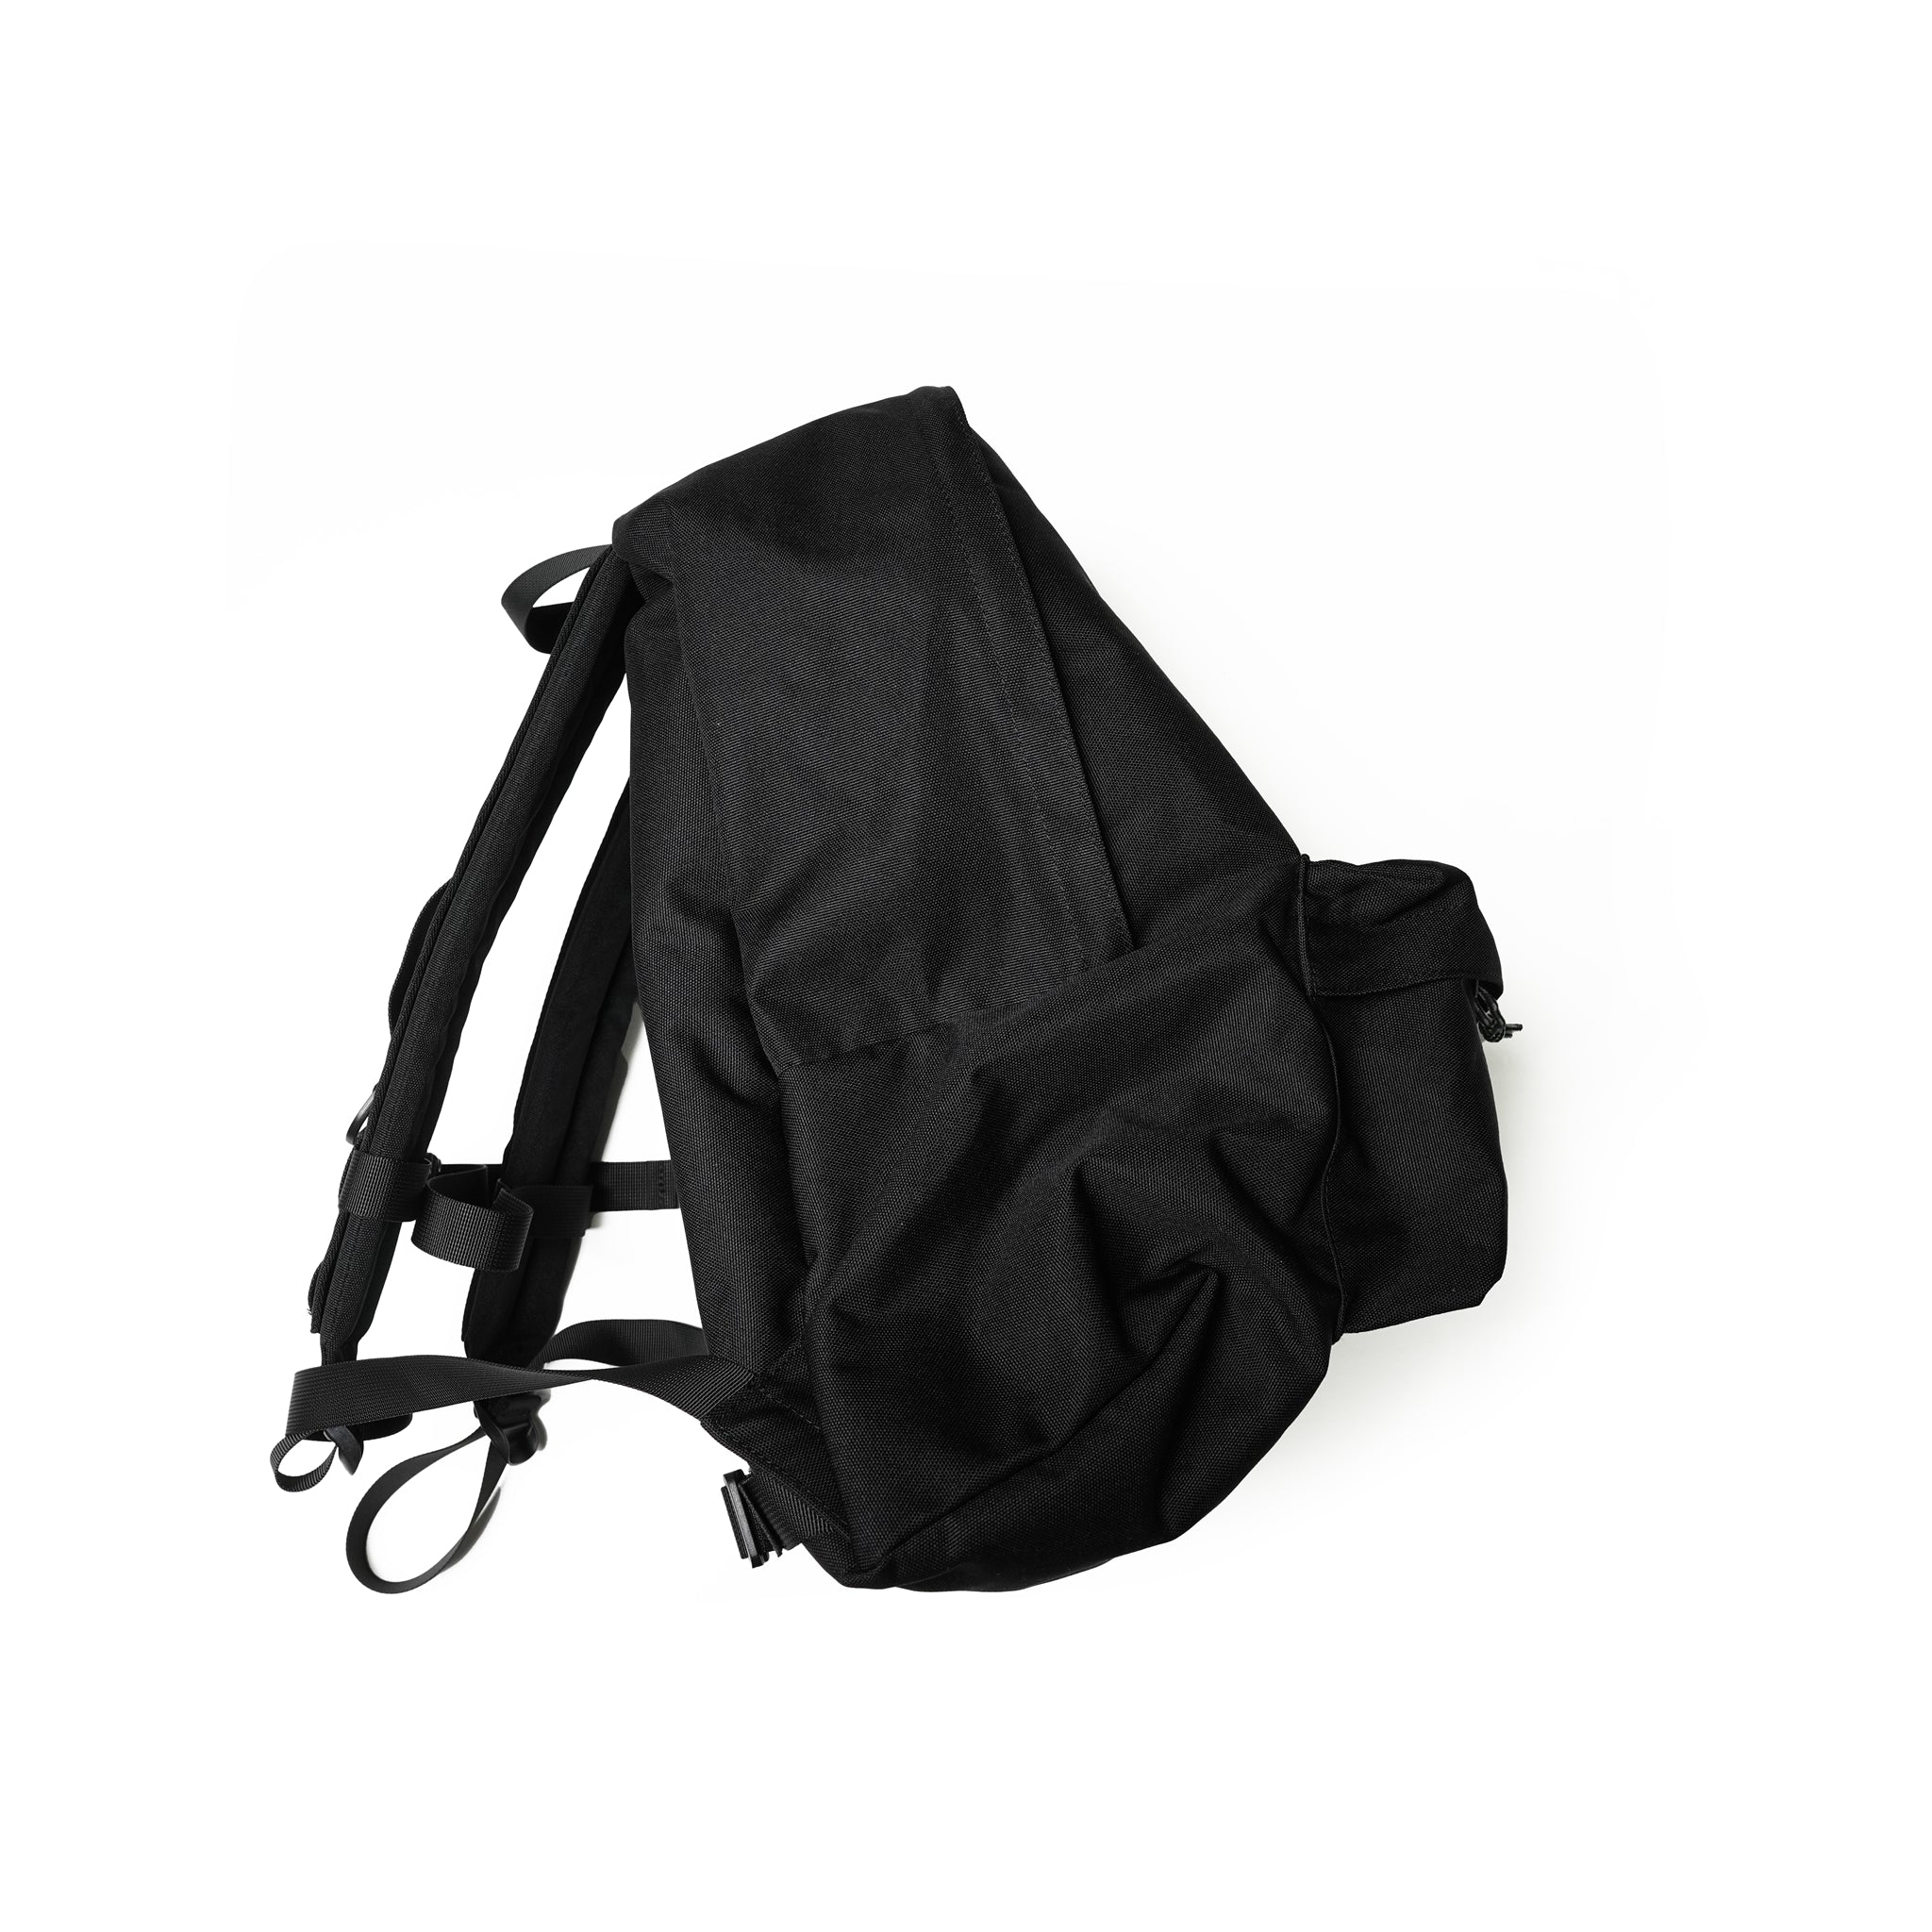 No:ok241-201 | Name:Backpack | Color:Black【OK_オーケー】